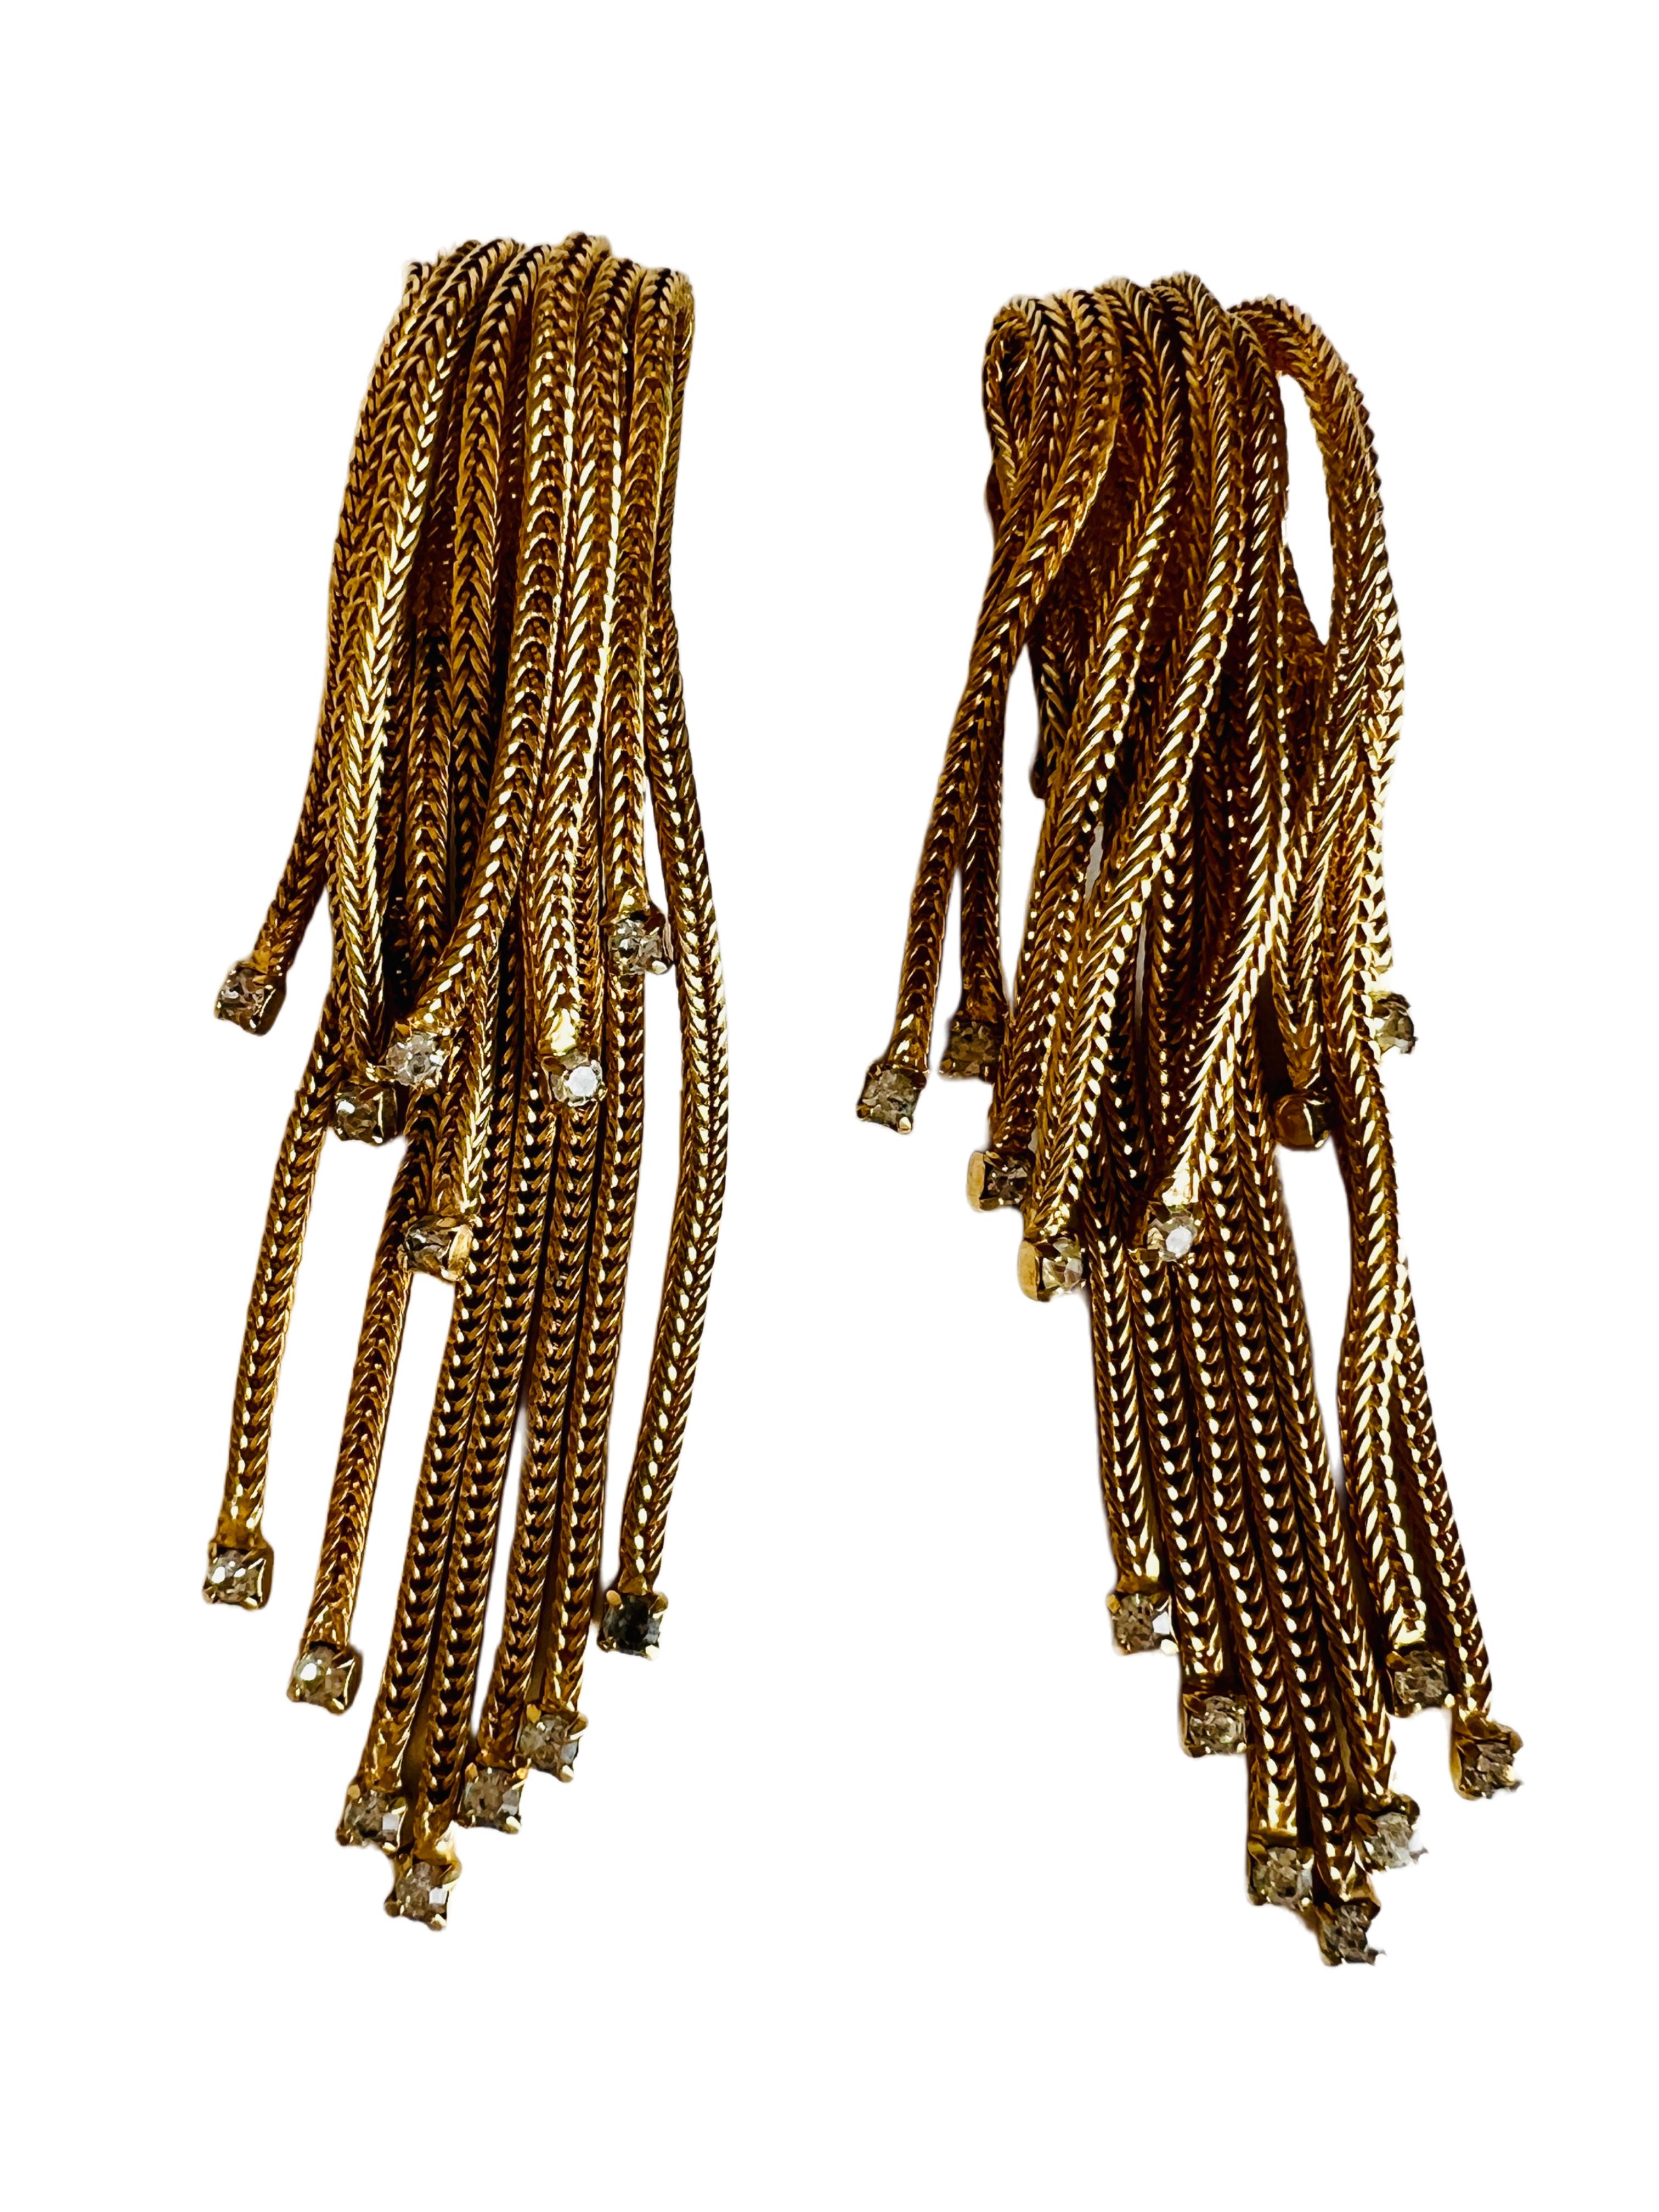 Women's Hattie Carnegie Gold Mesh Chain Waterfall Tassel Choker Necklace Earrings Set For Sale